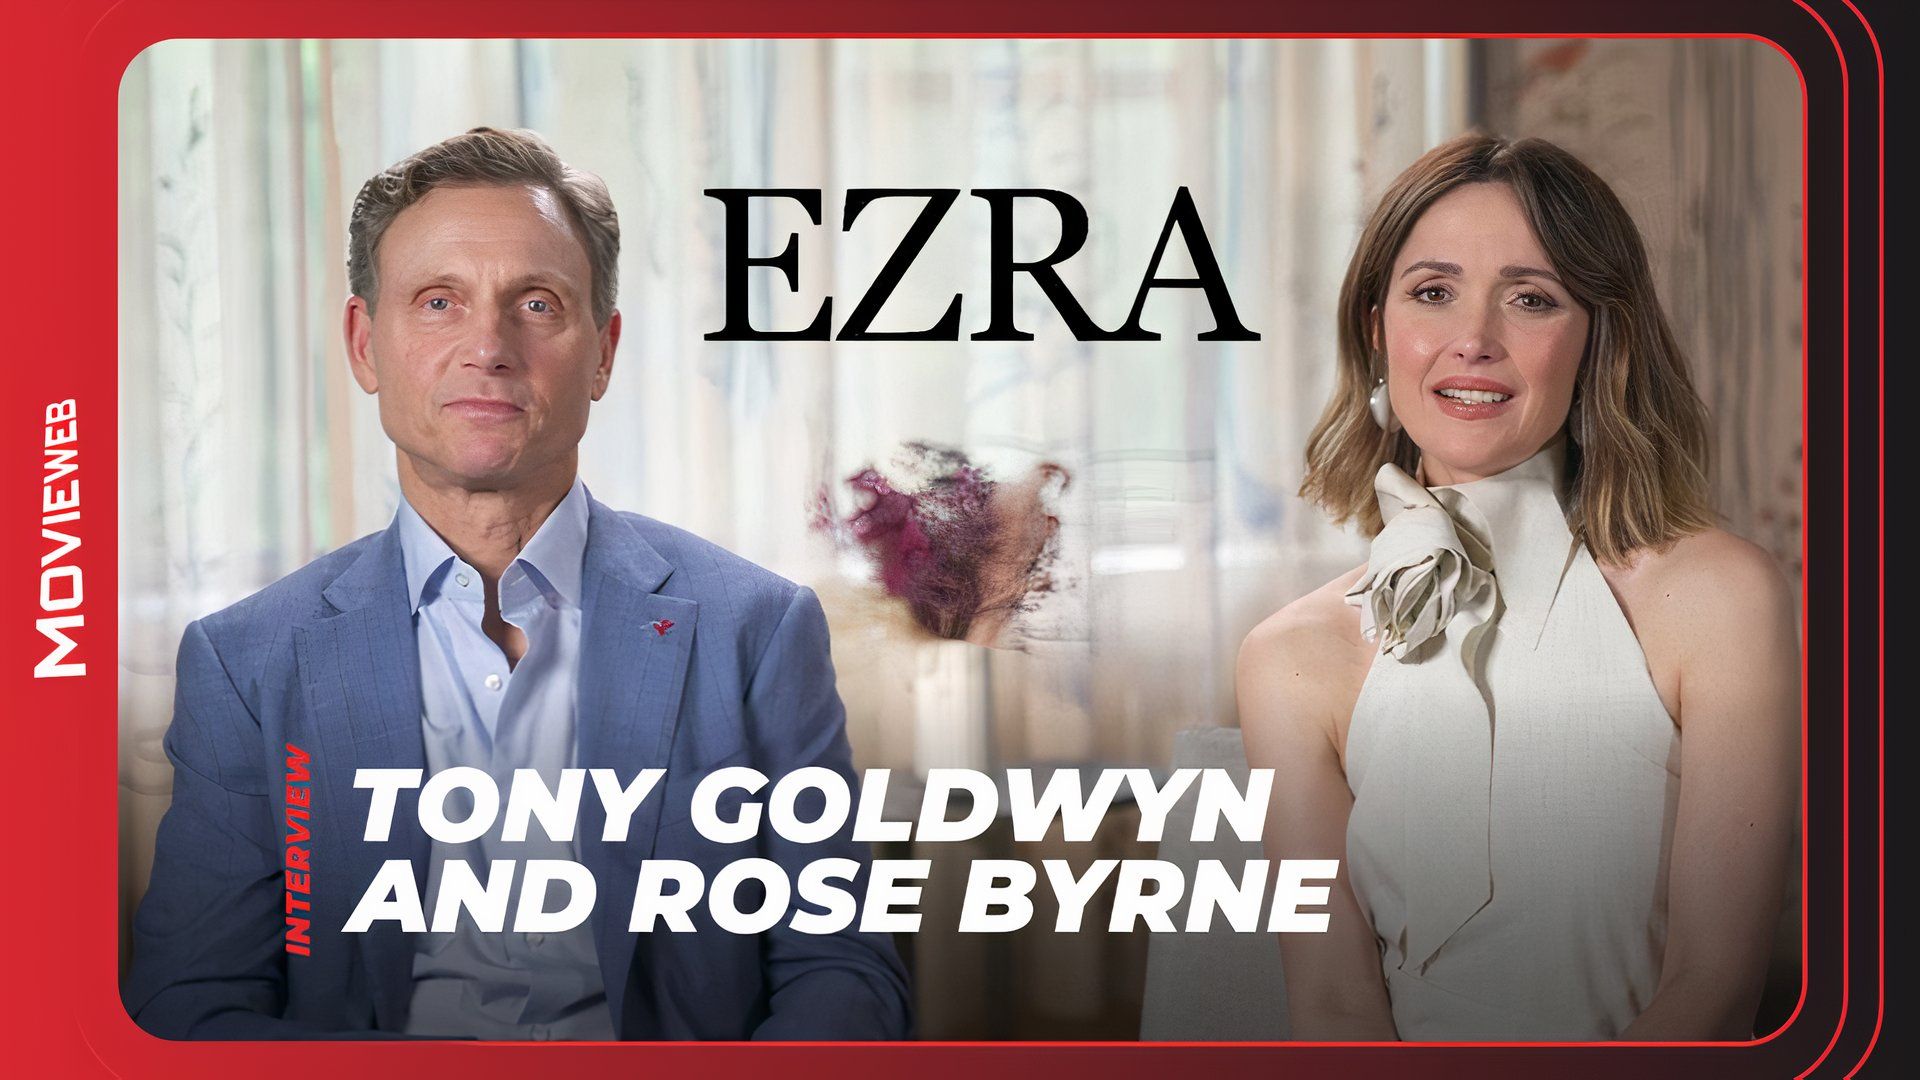 Ezra - Tony Goldwyn and Rose Byrne